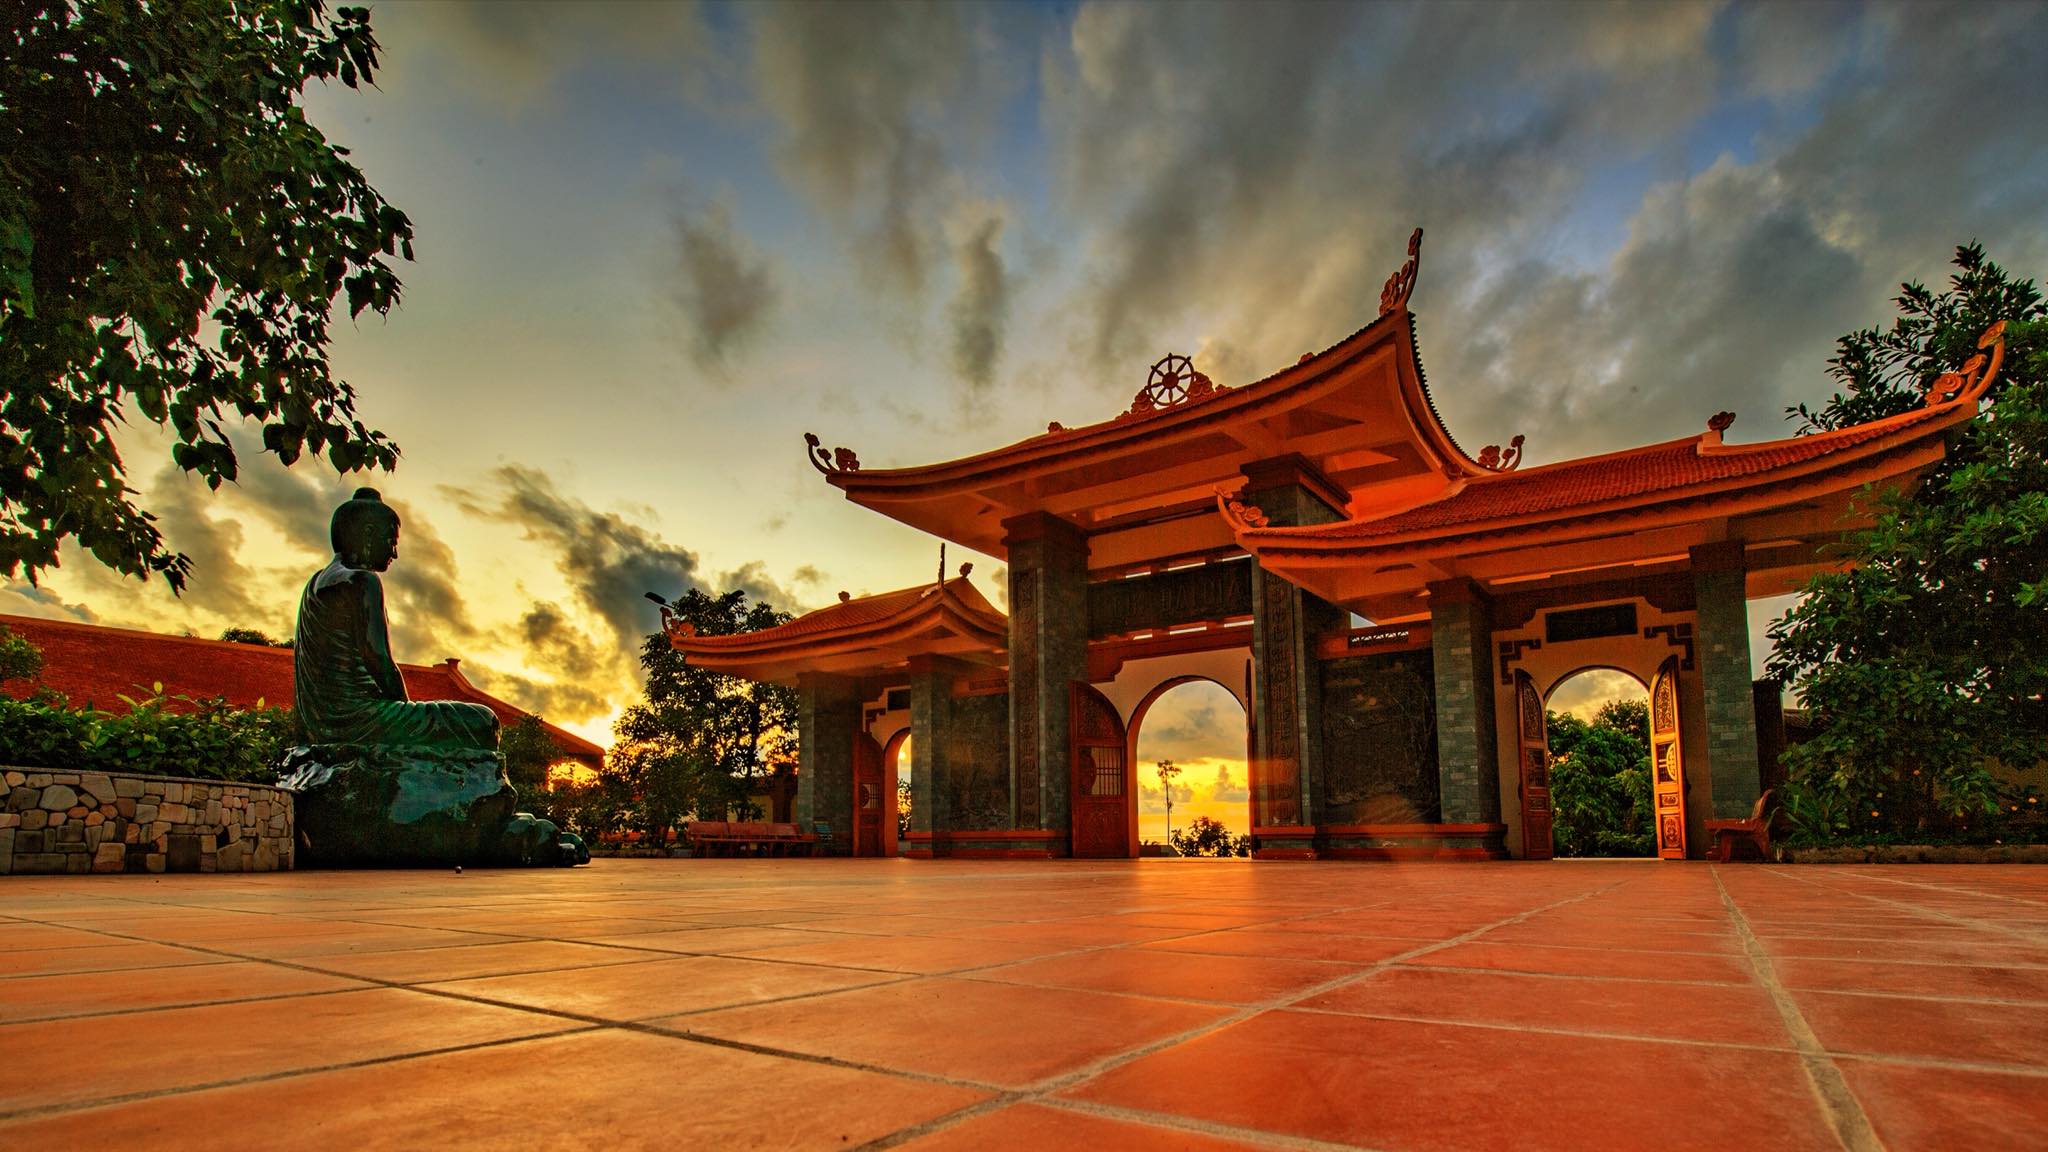 Tổng hợp 10 ngôi chùa Phú Quốc nổi tiếng tâm linh